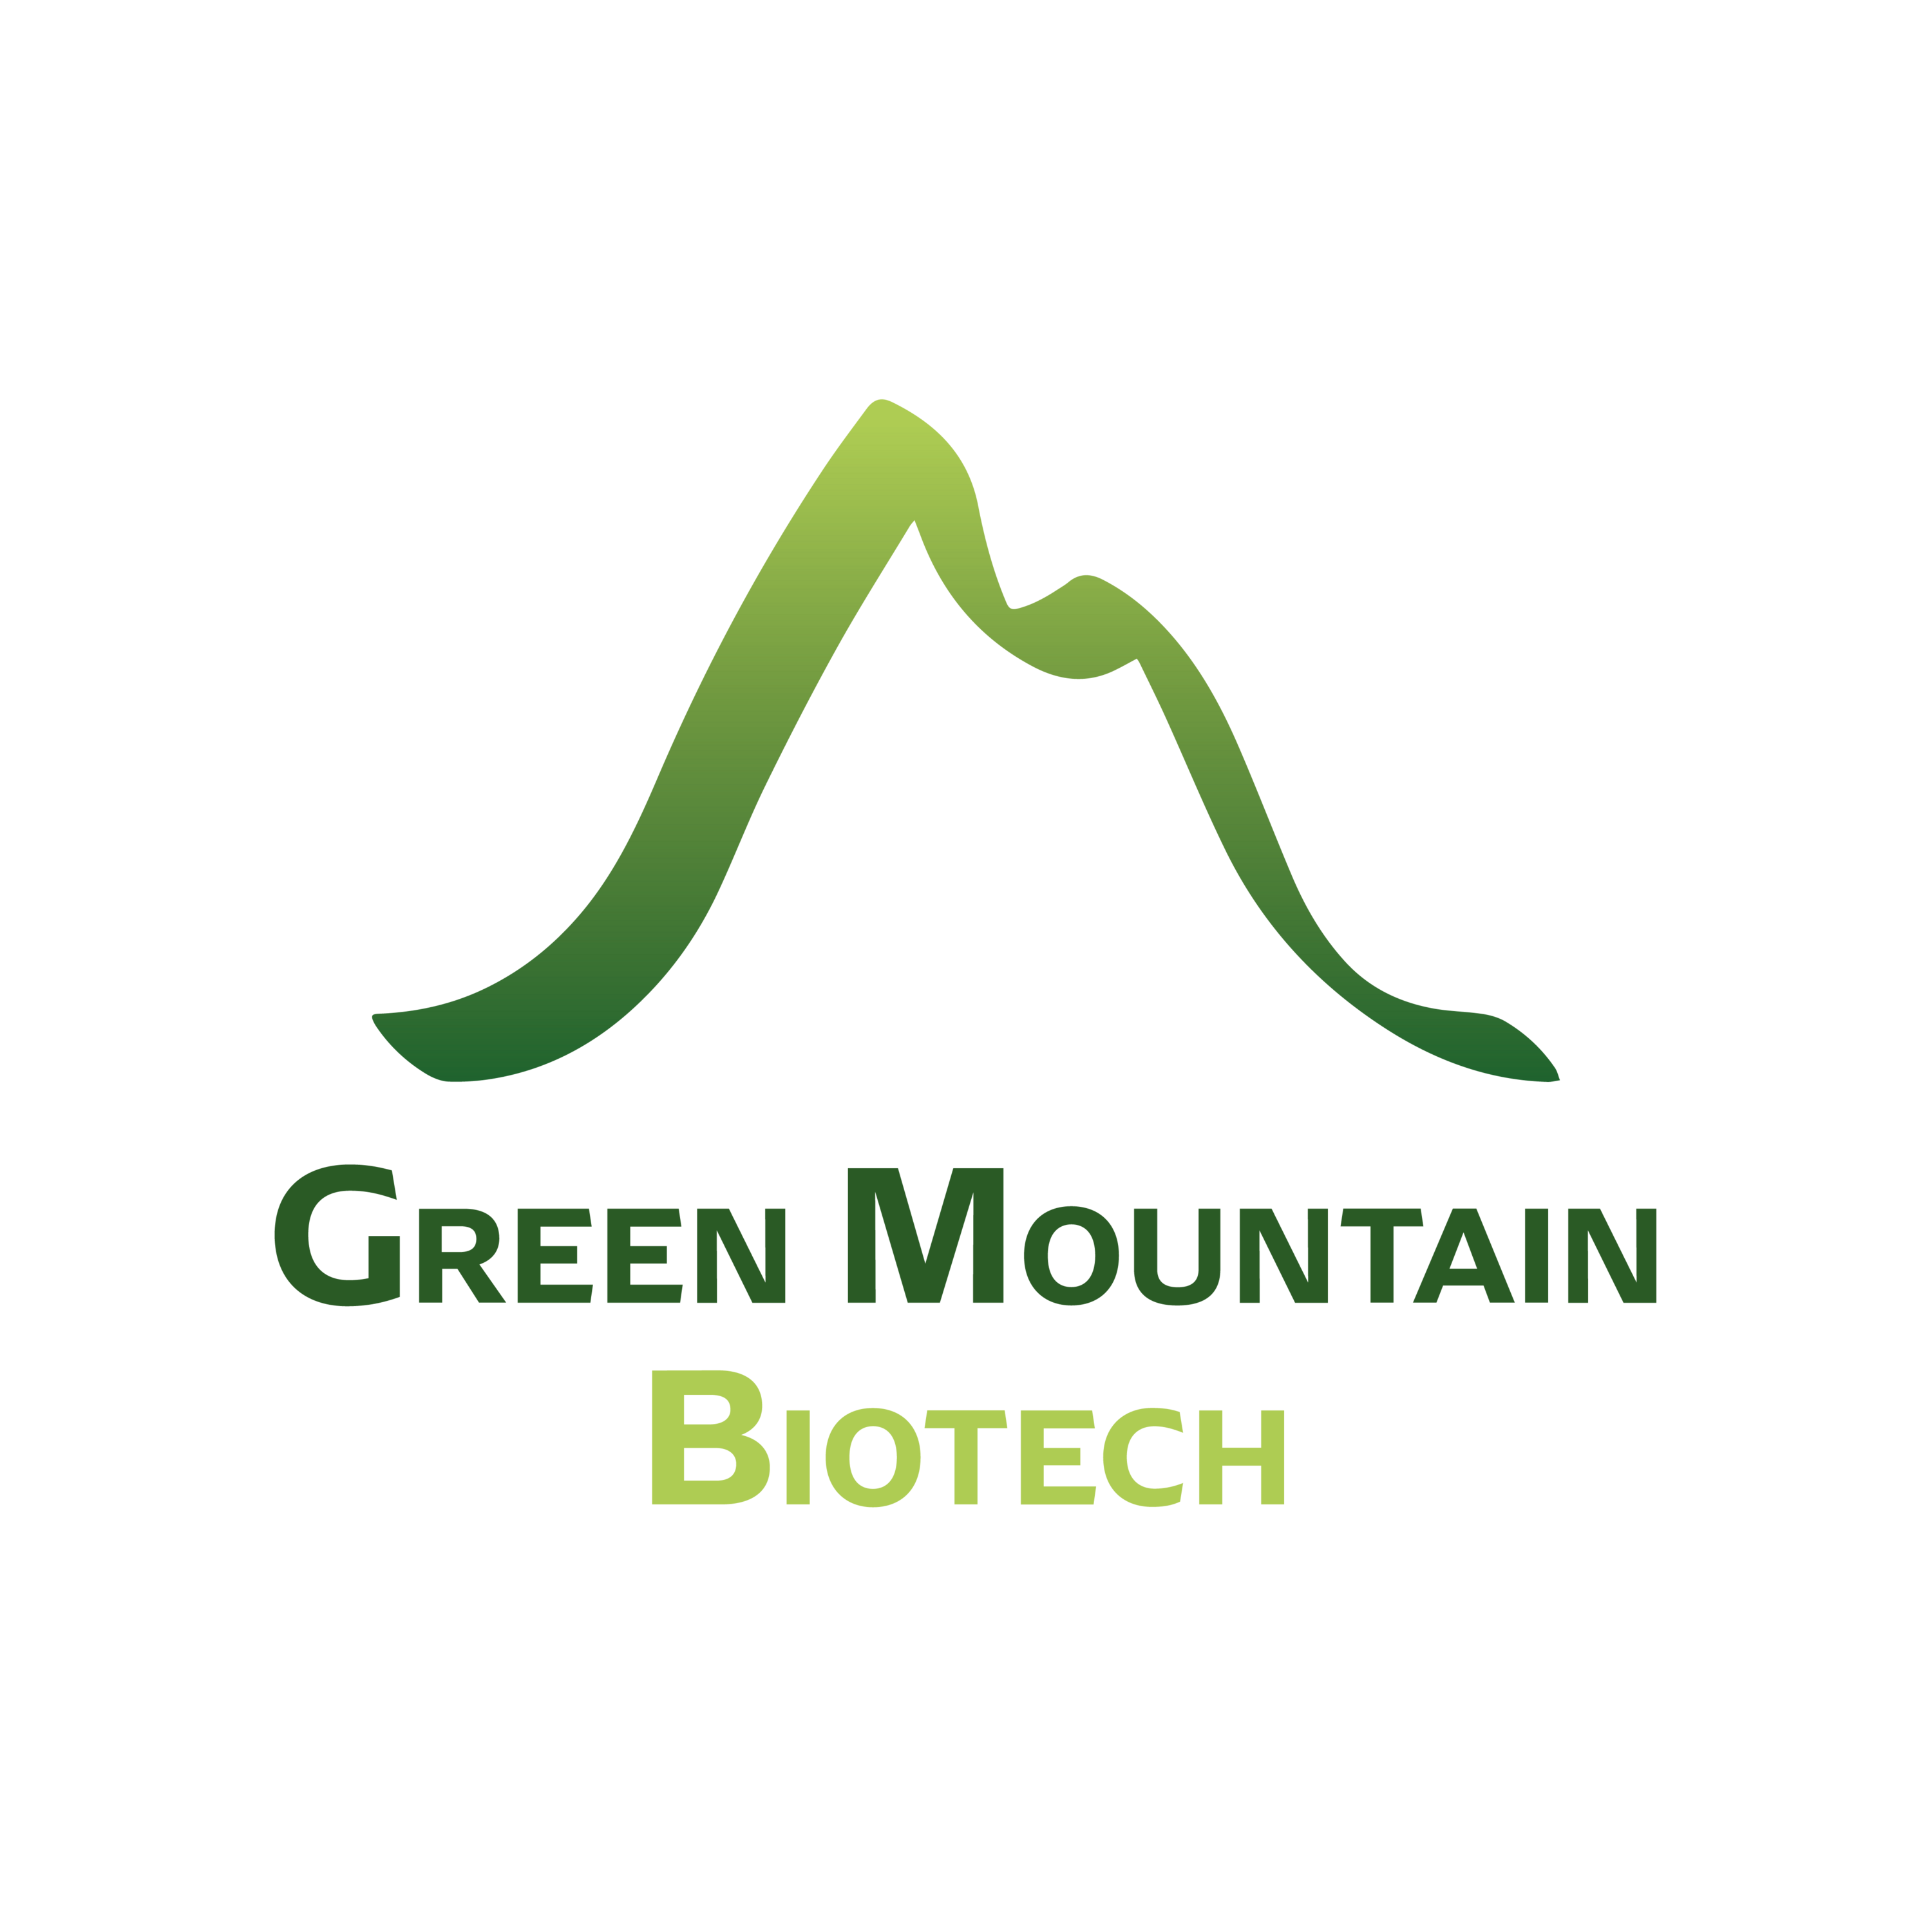 Green Mountain Biotech Logo